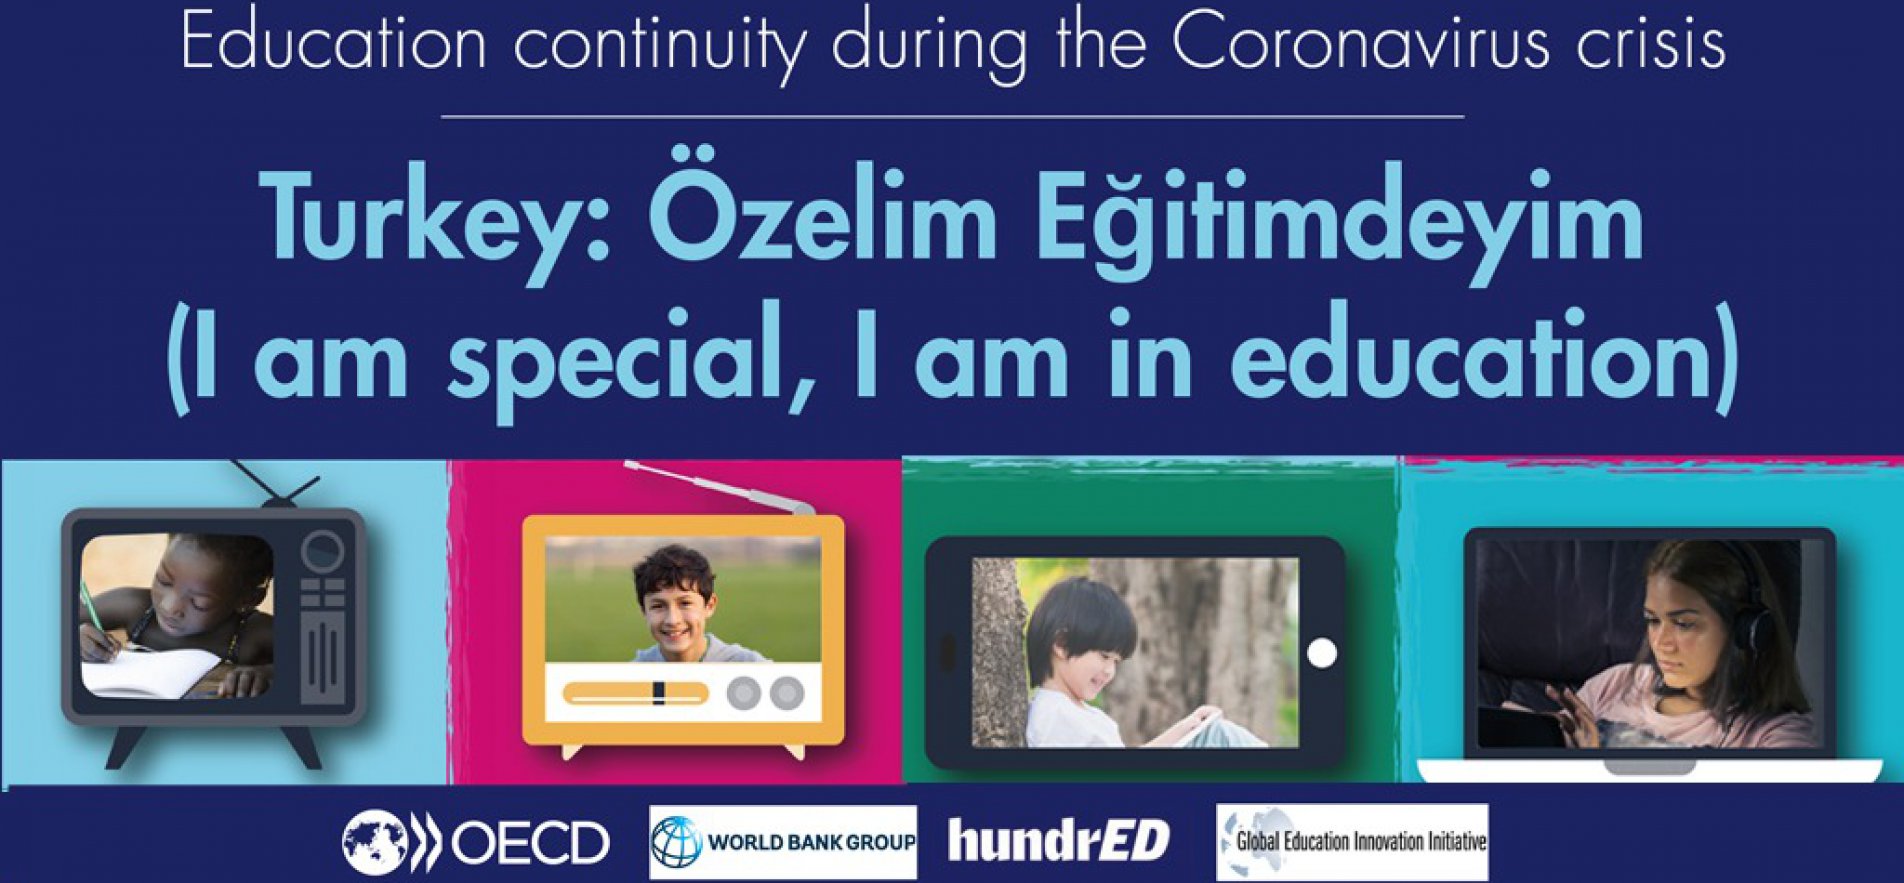 "Özelim Eğitimdeyim" Uygulaması OECD Tarafından Dünyaya Örnek Gösterildi